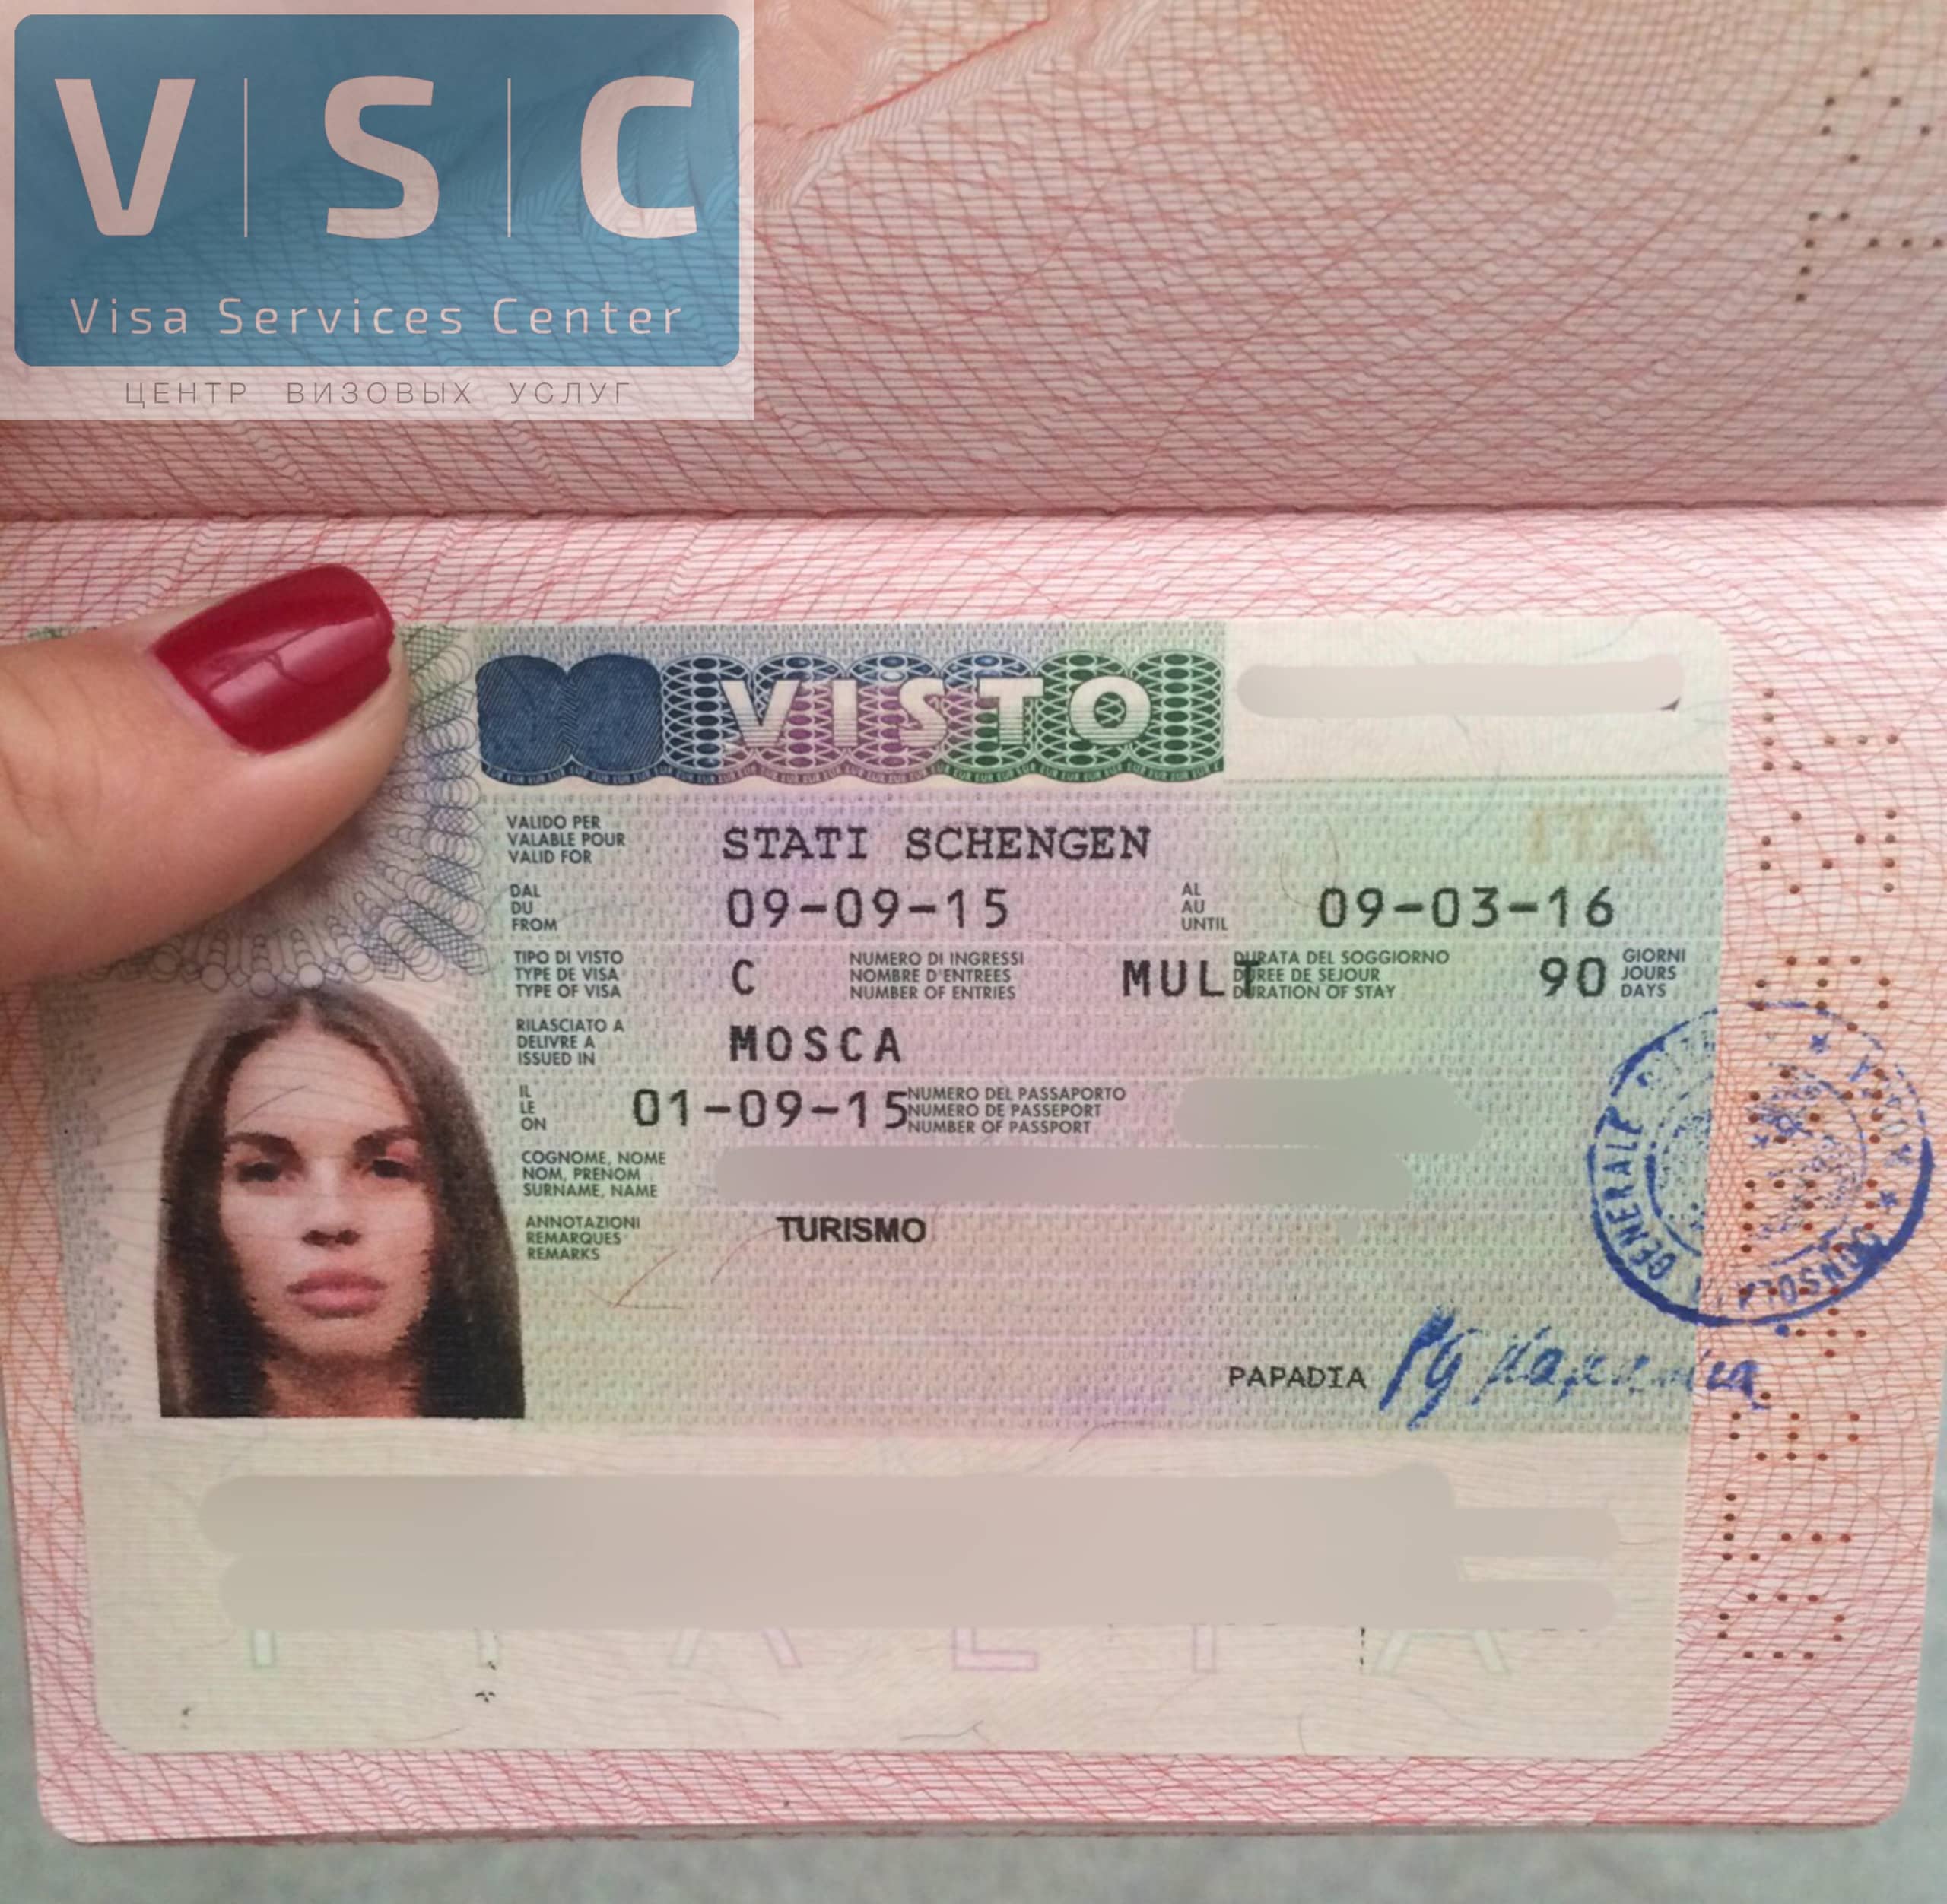 Visa визовый. Виза. Шенгенская виза. Туристическая виза.